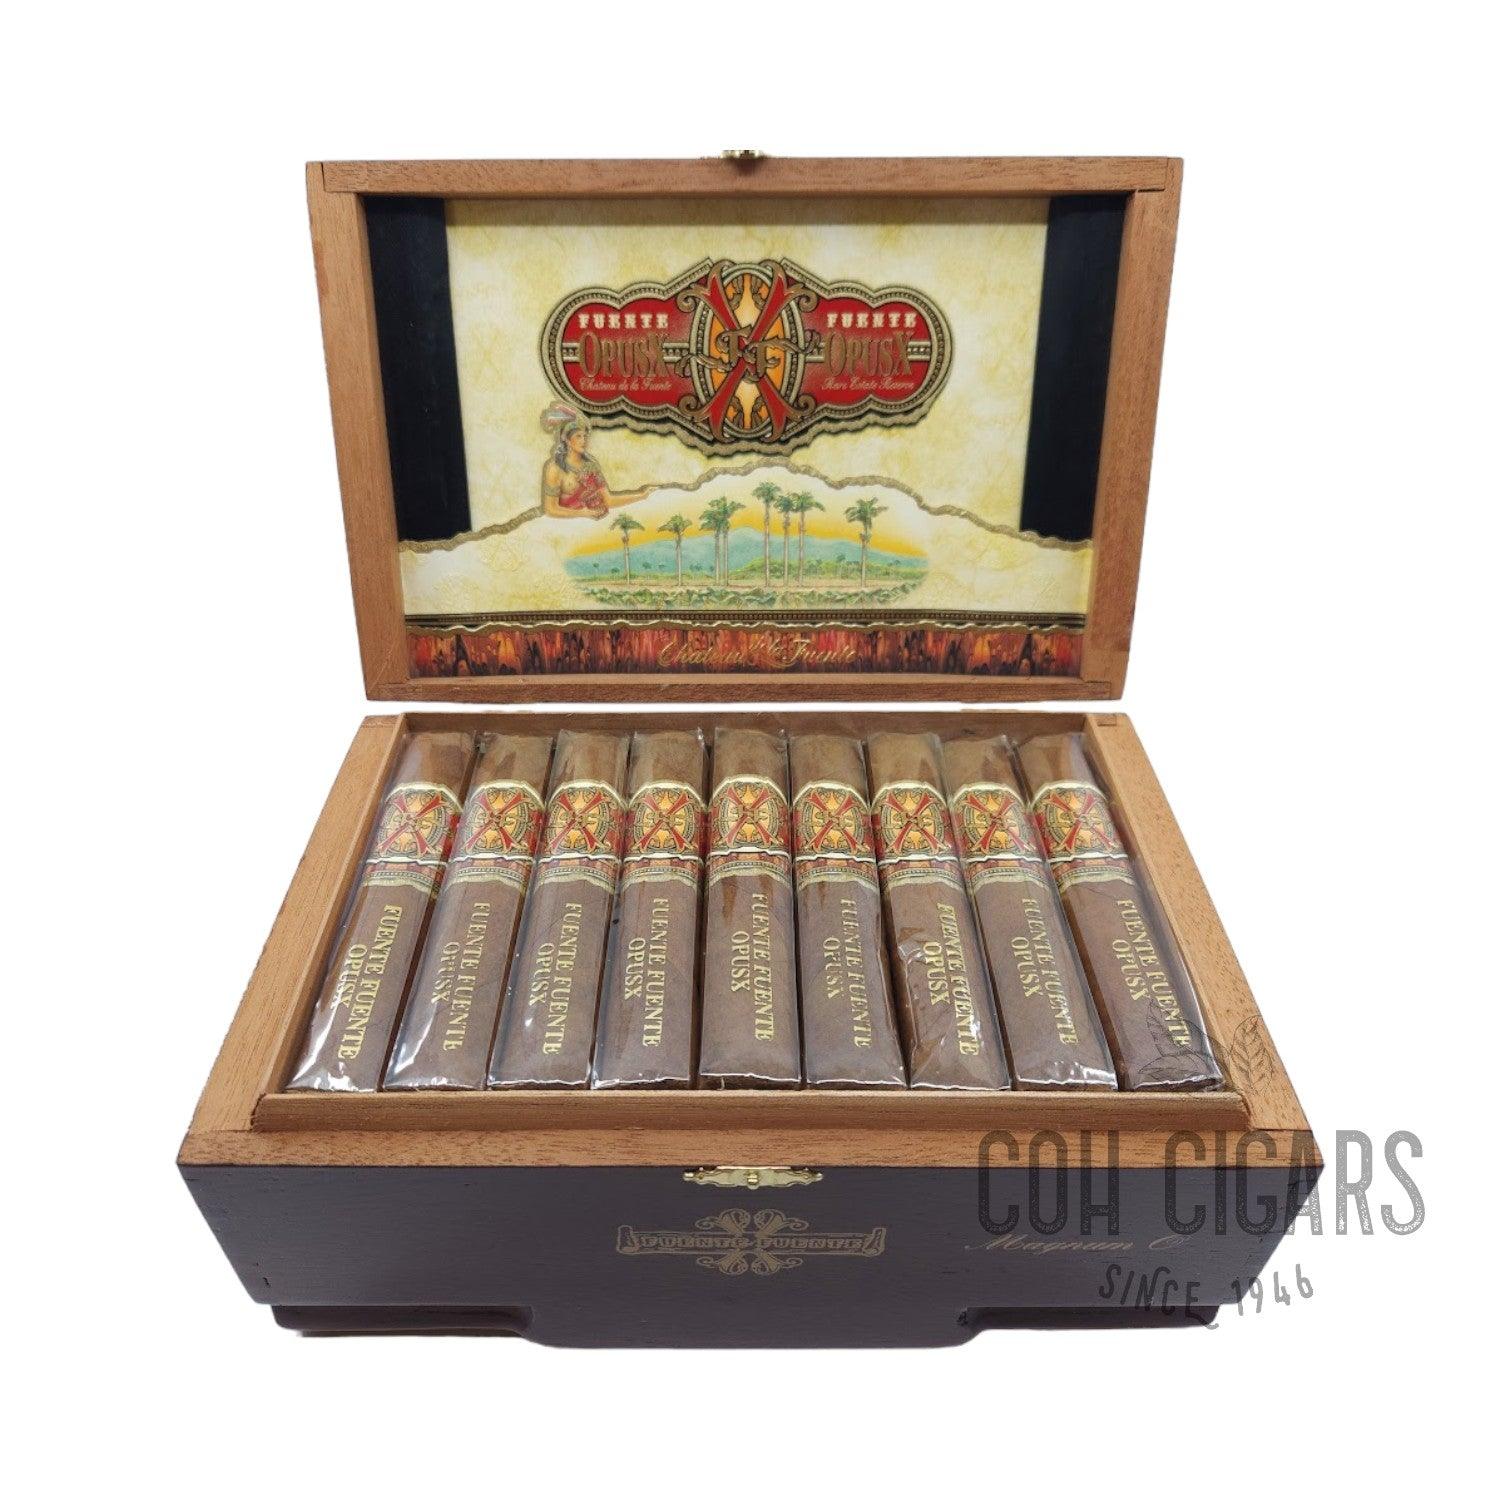 Arturo Fuente Cigar | Fuente Fuente Opusx Magnum O | Box 36 - hk.cohcigars